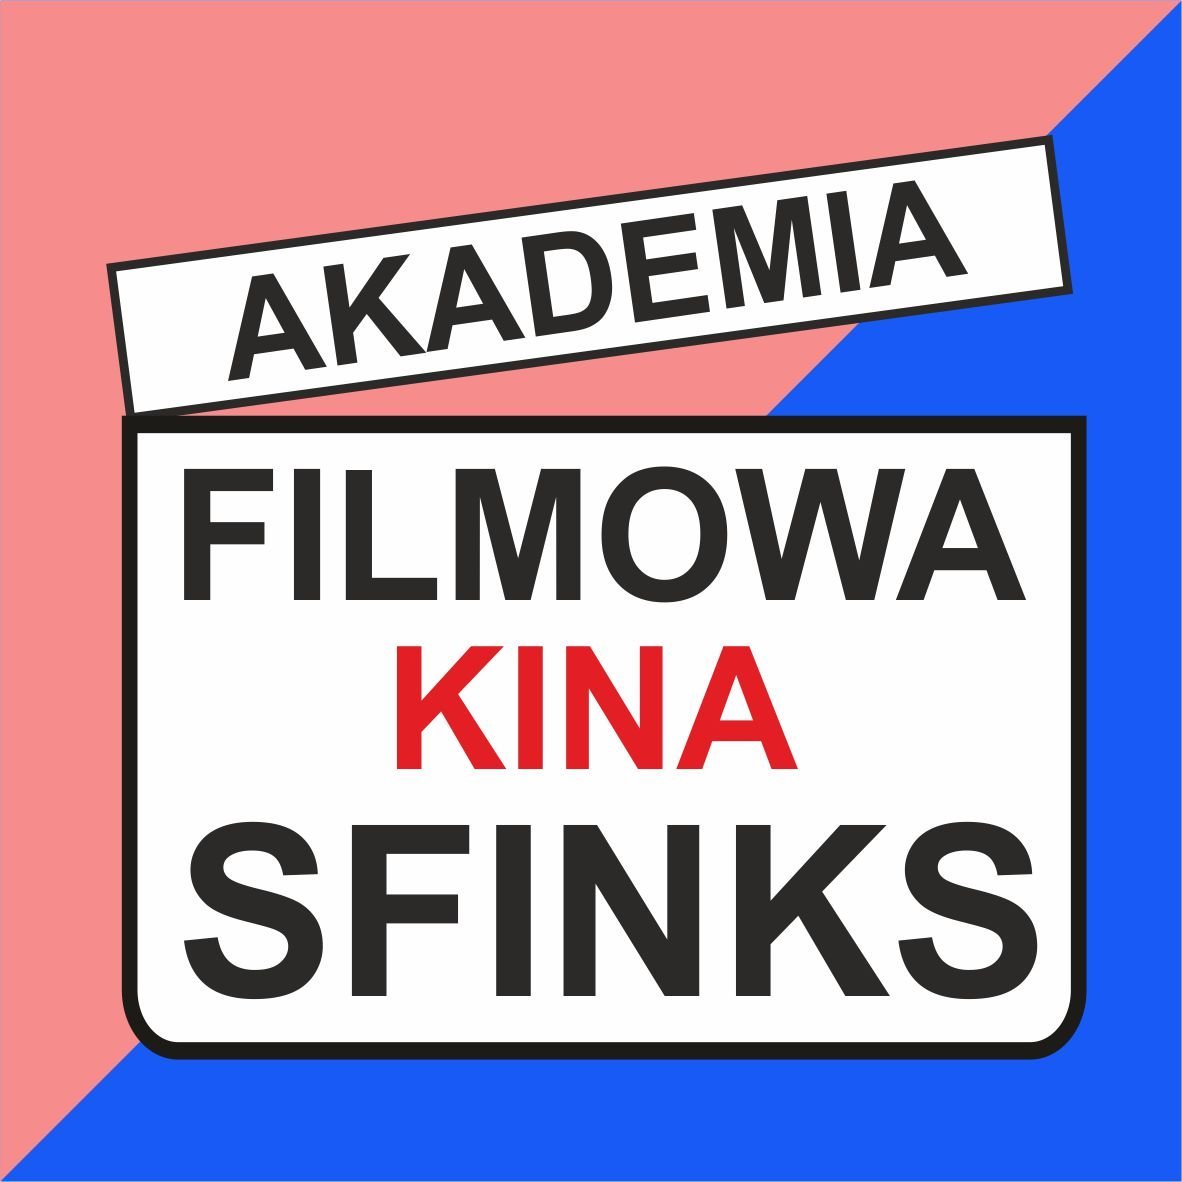 Akademia Filmowa Sfinksa: warsztaty filmowe + projekcja filmu